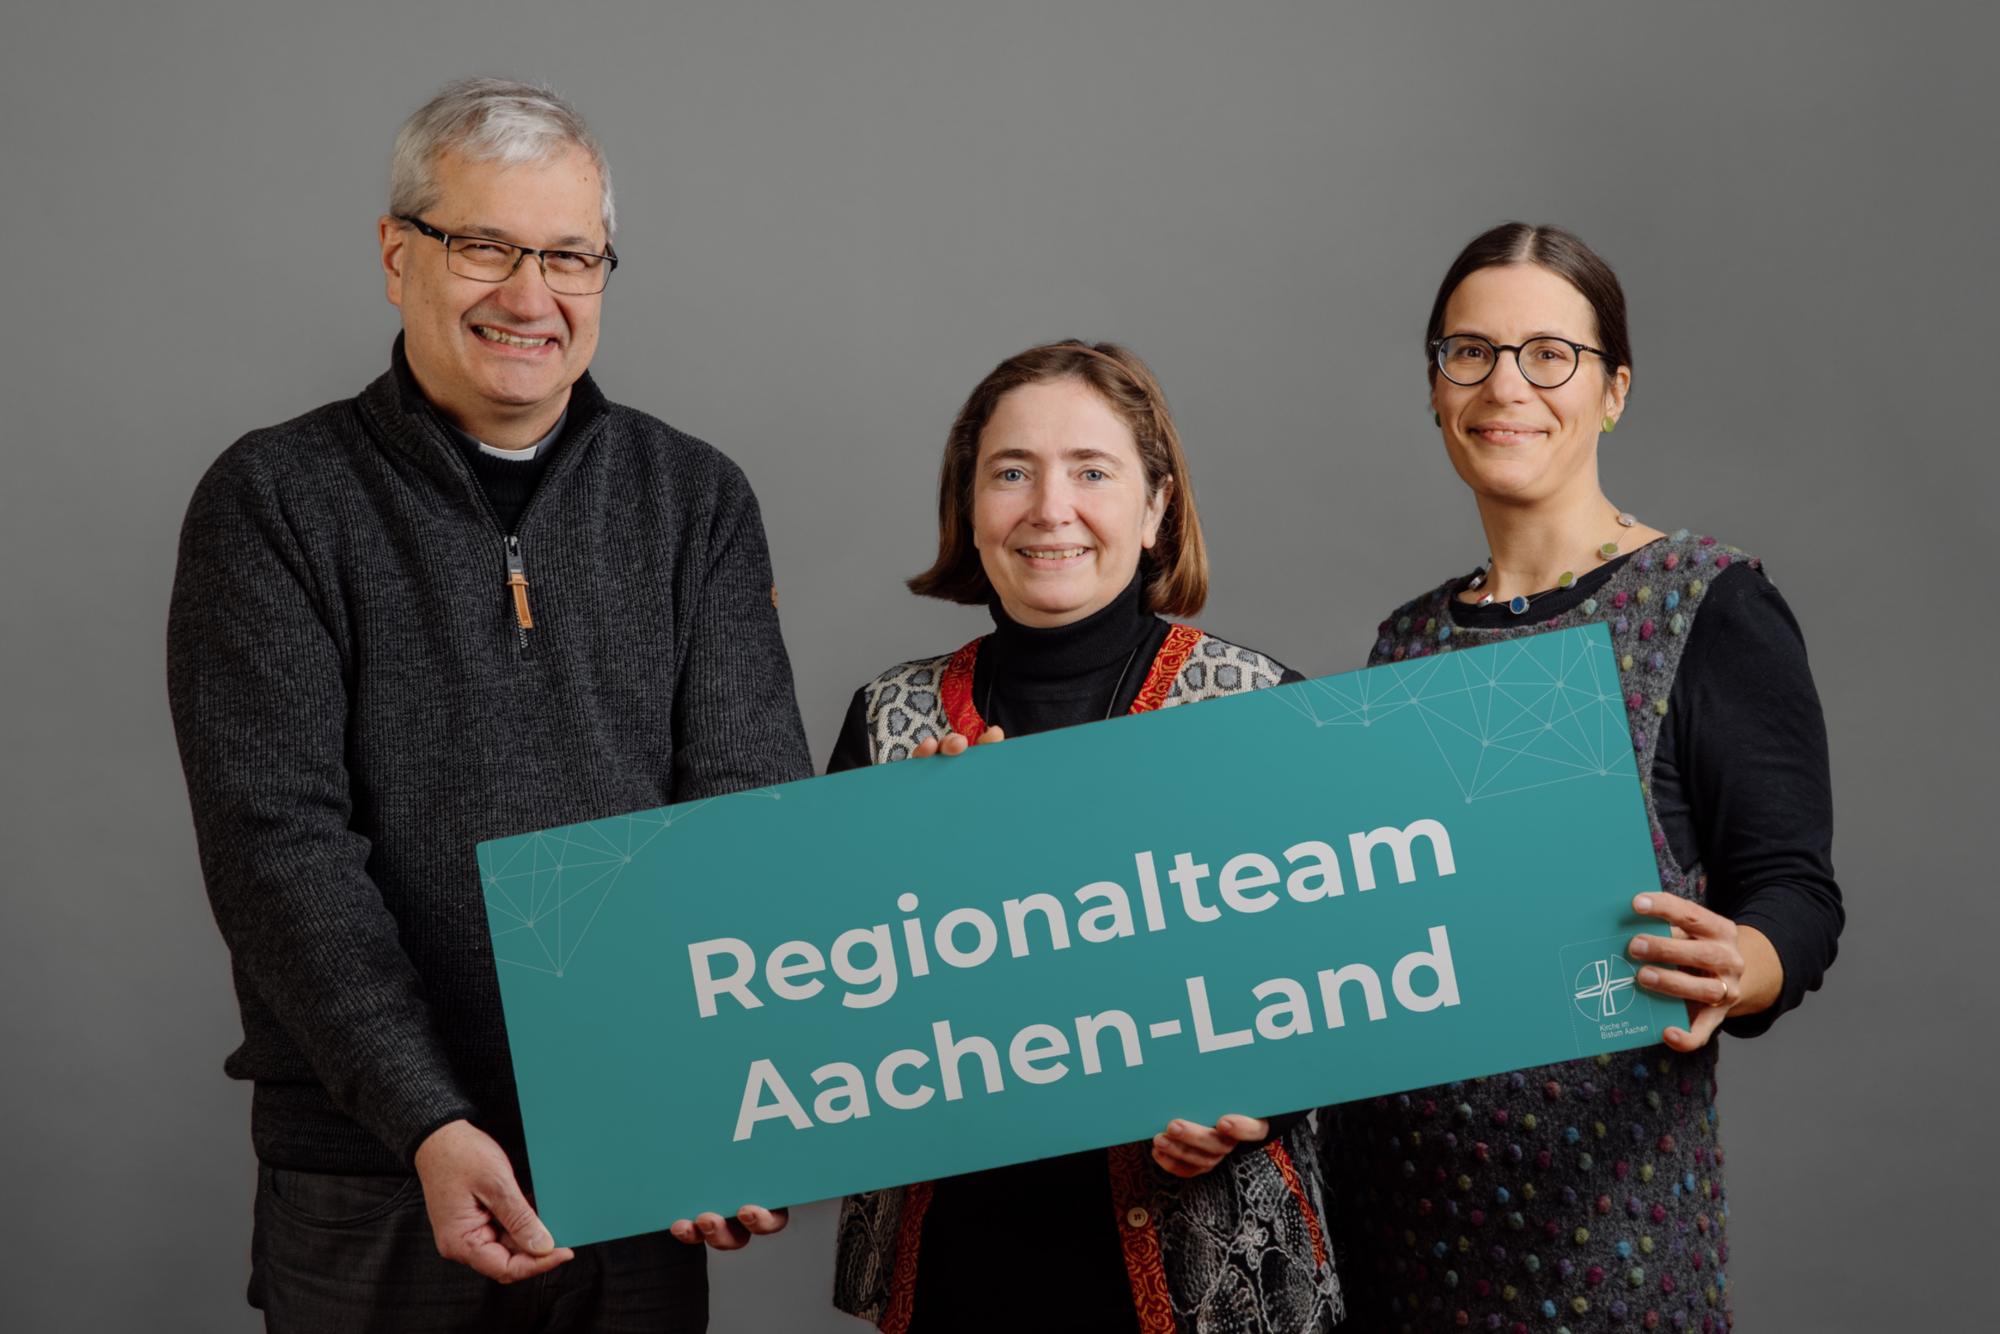 Regionalteam Aachen-Land: Pfr. Hannokarl Weishaupt, Erdmute Söndgen, Dr. Annette Jantzen